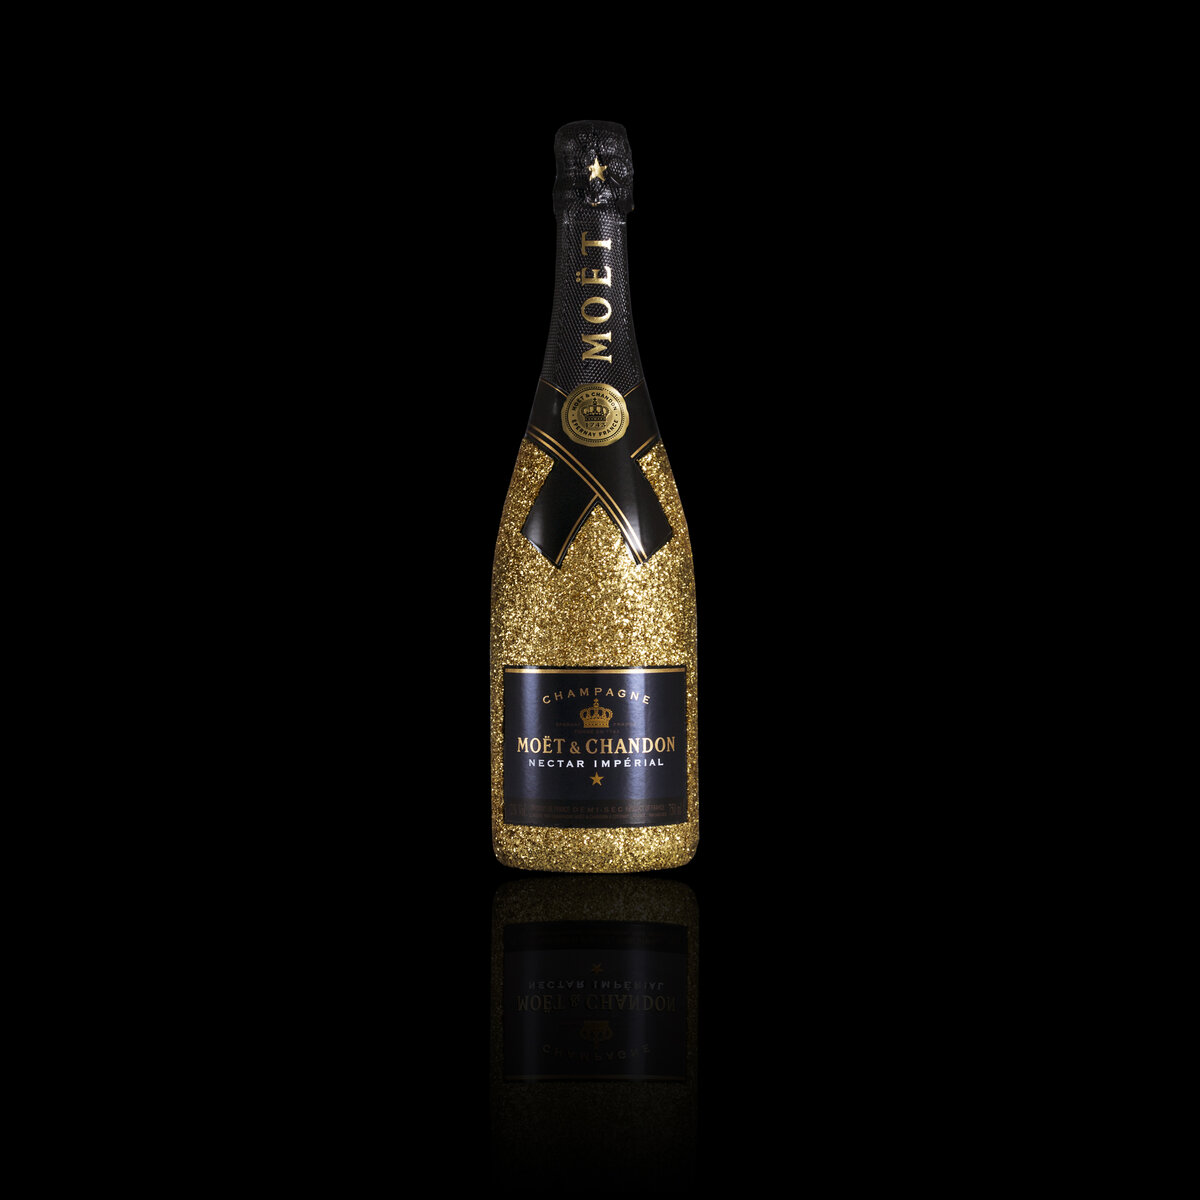 Objem: 0,75 l - Alkohol: 12% - Pôvod: Champagne-Ardenne, Francúzsko - Značka: Moët & Chandon